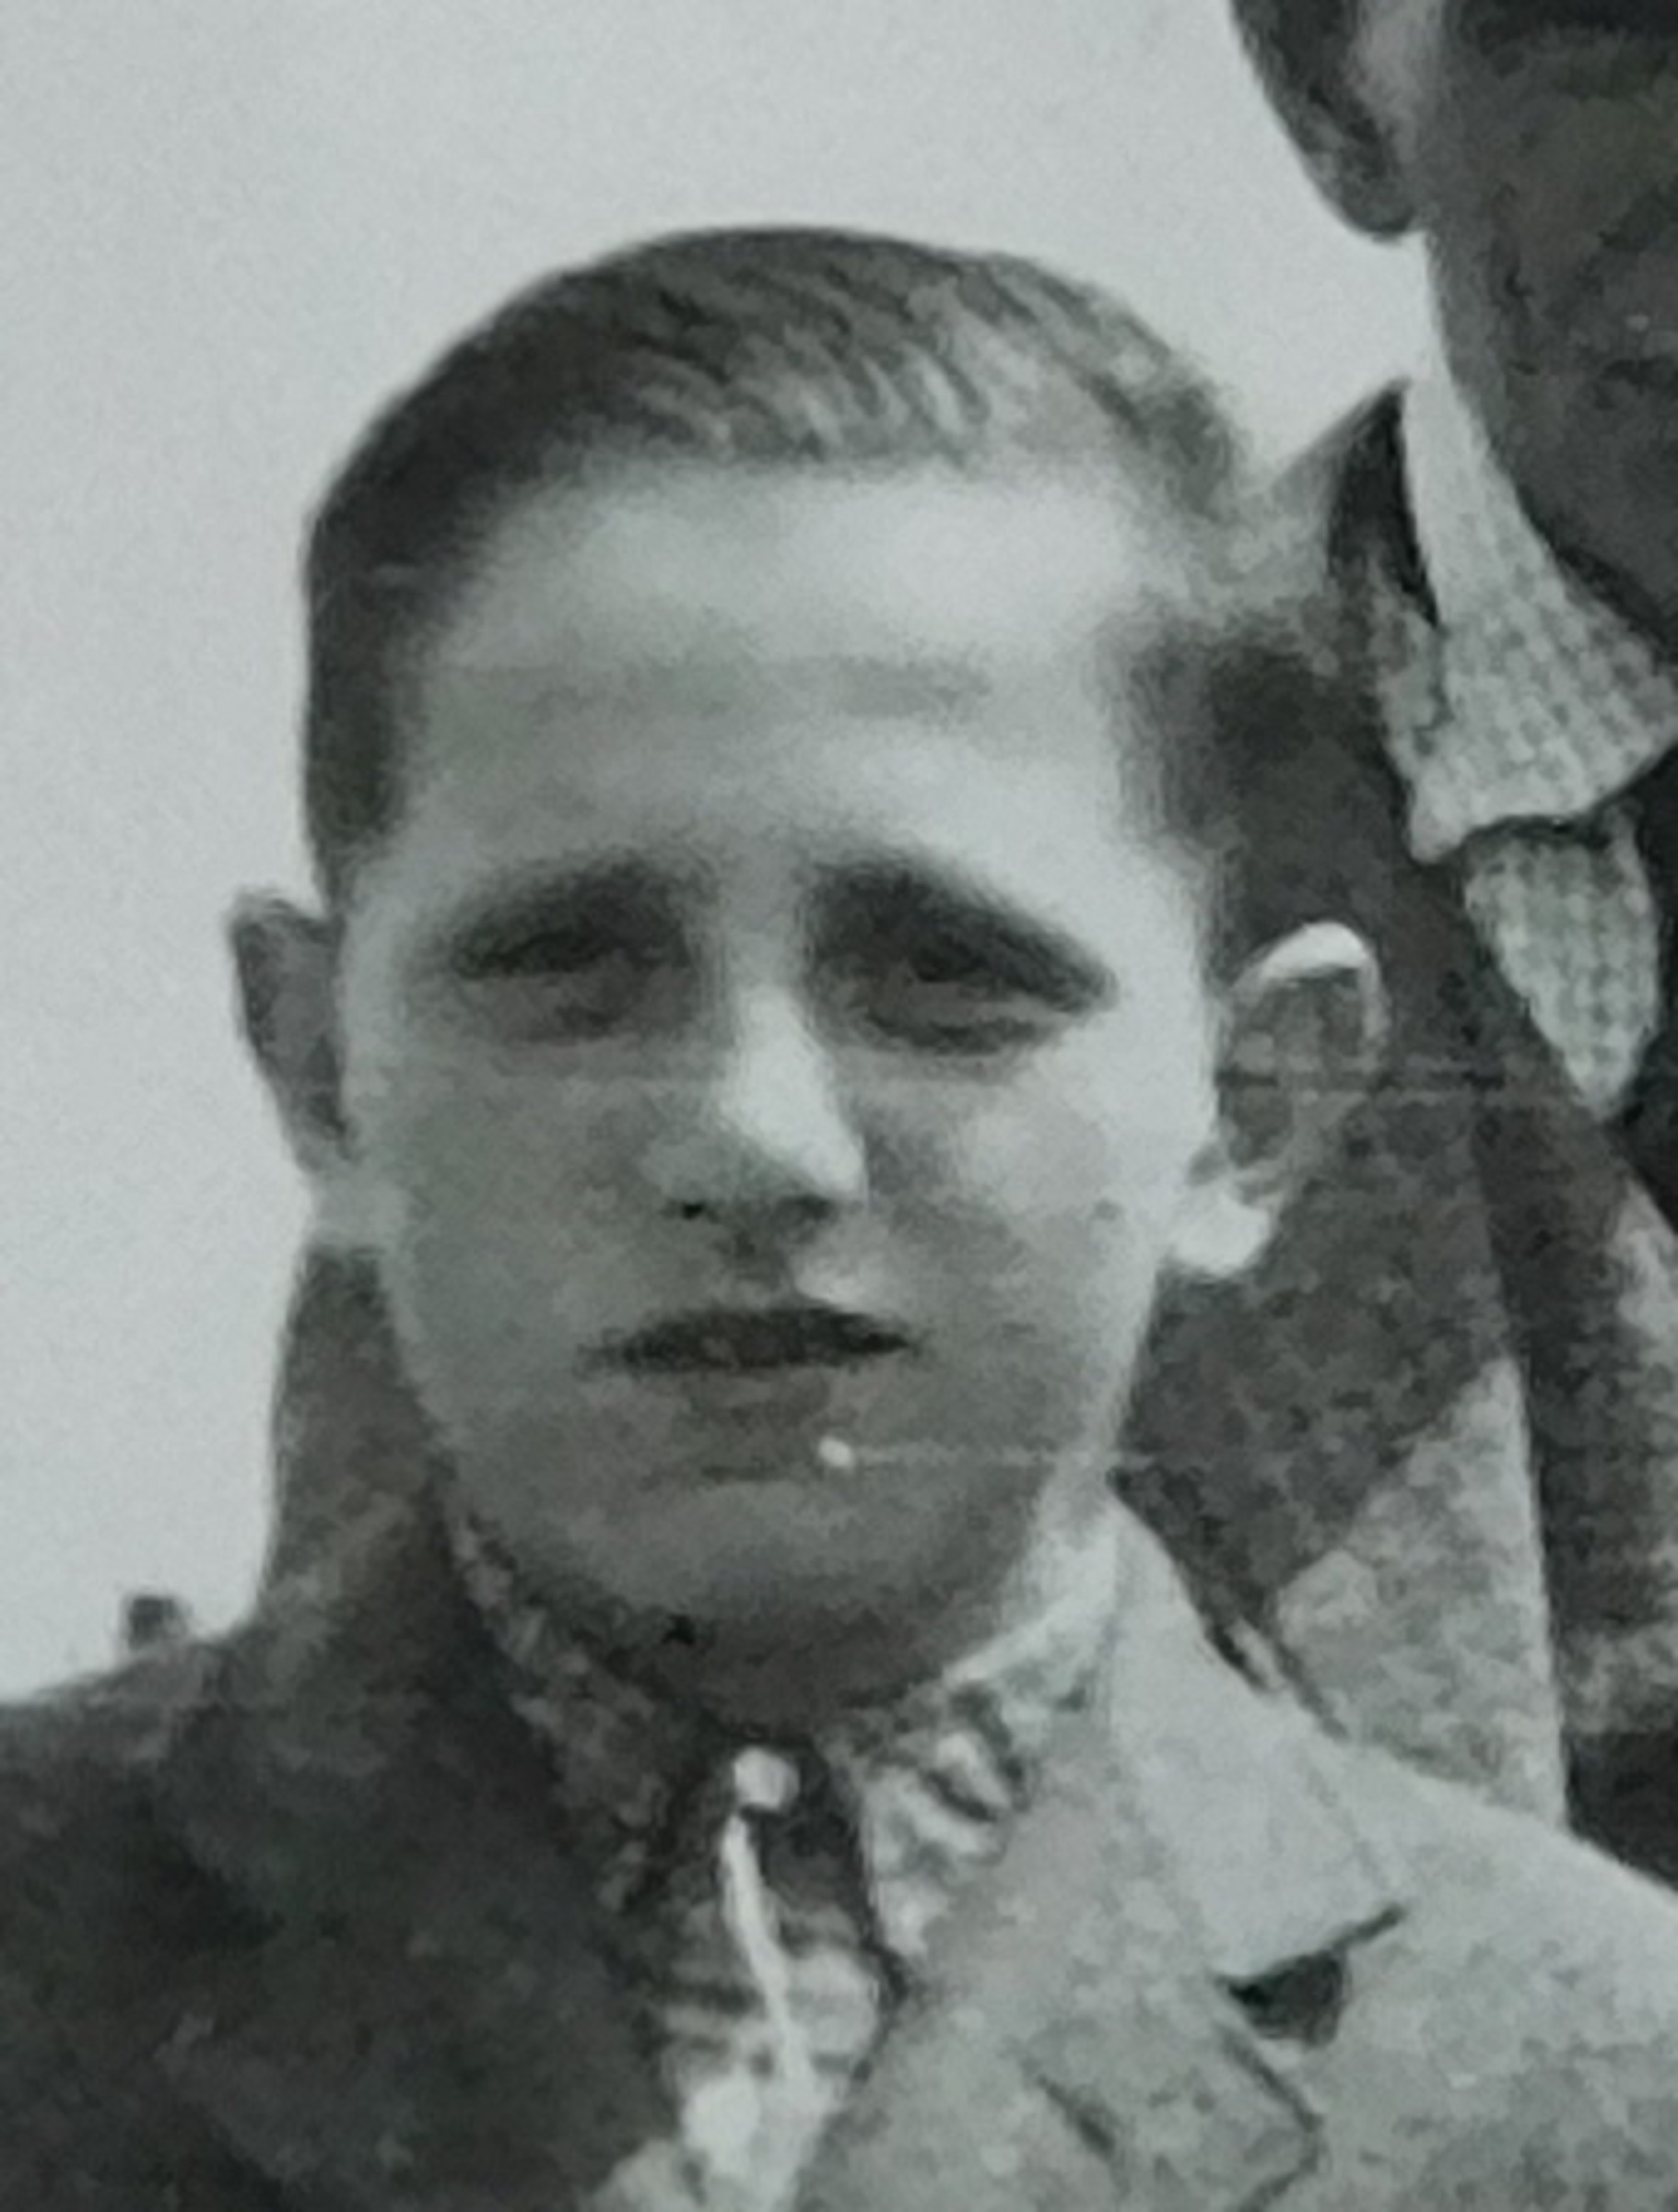 Vladimír Bernát, a portrait 